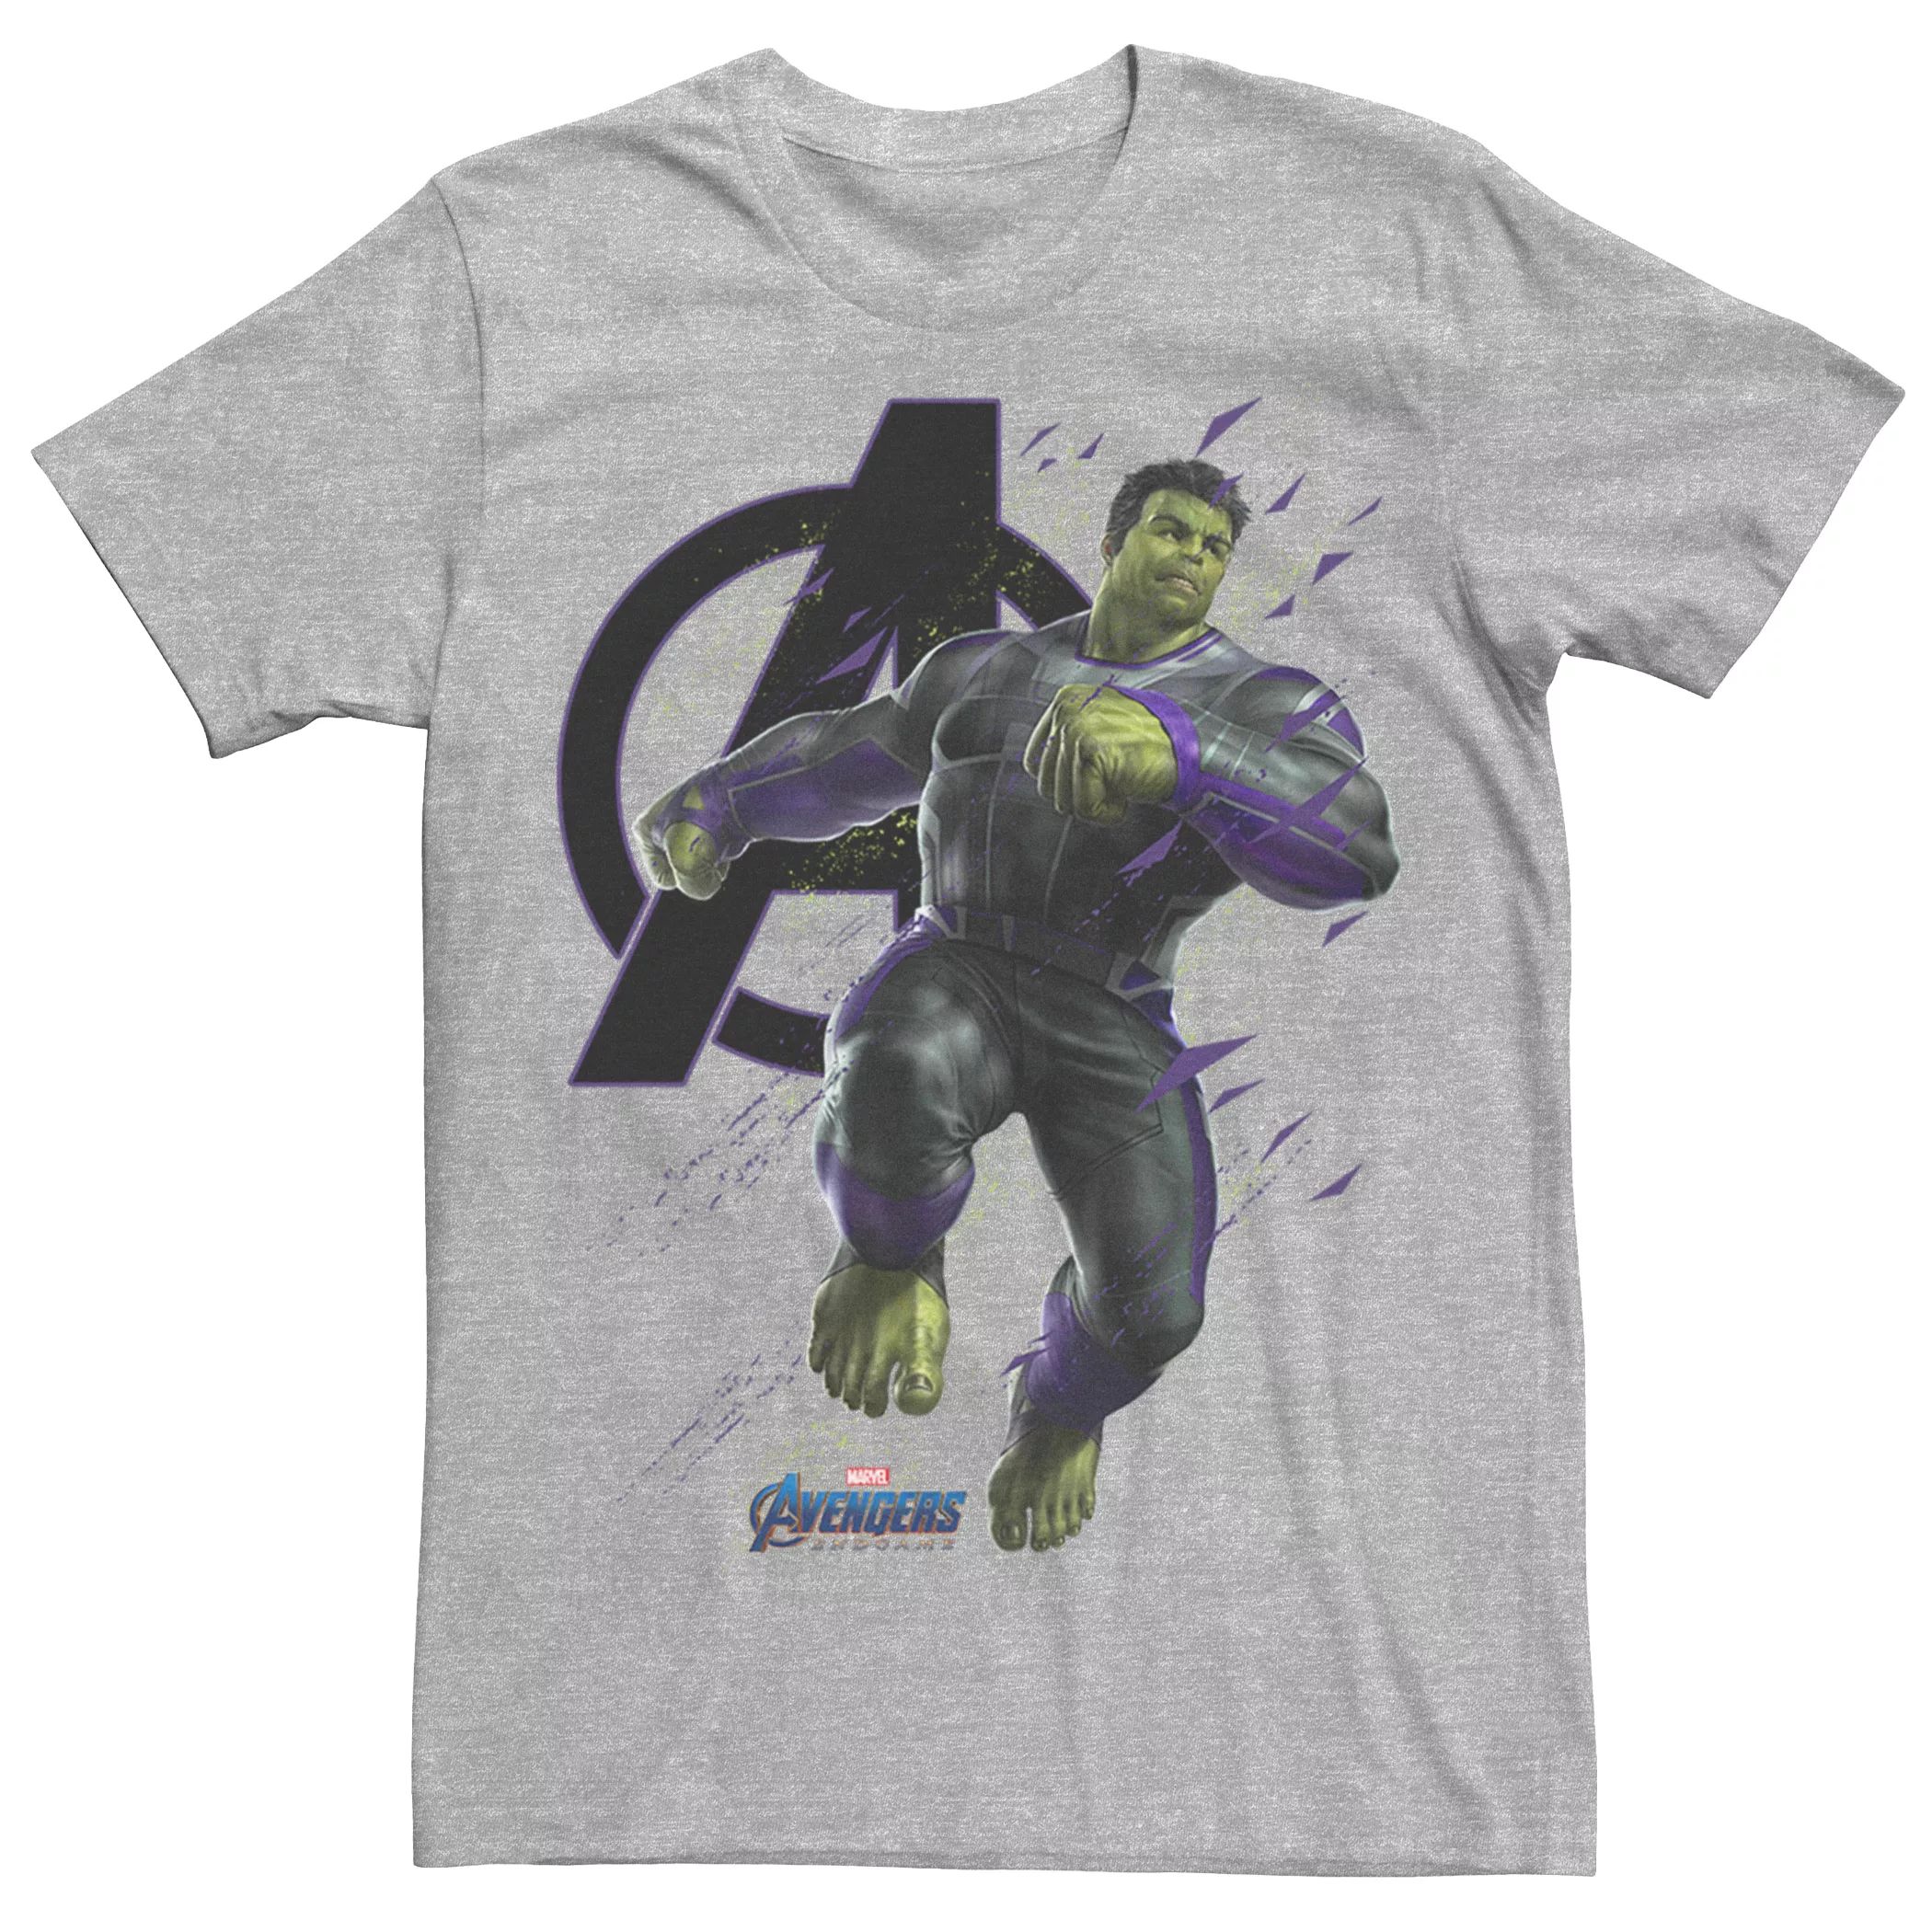 Мужская футболка Marvel Avengers Endgame Hulk Space Particles Licensed Character мужская футболка marvel avengers endgame circle hulk licensed character